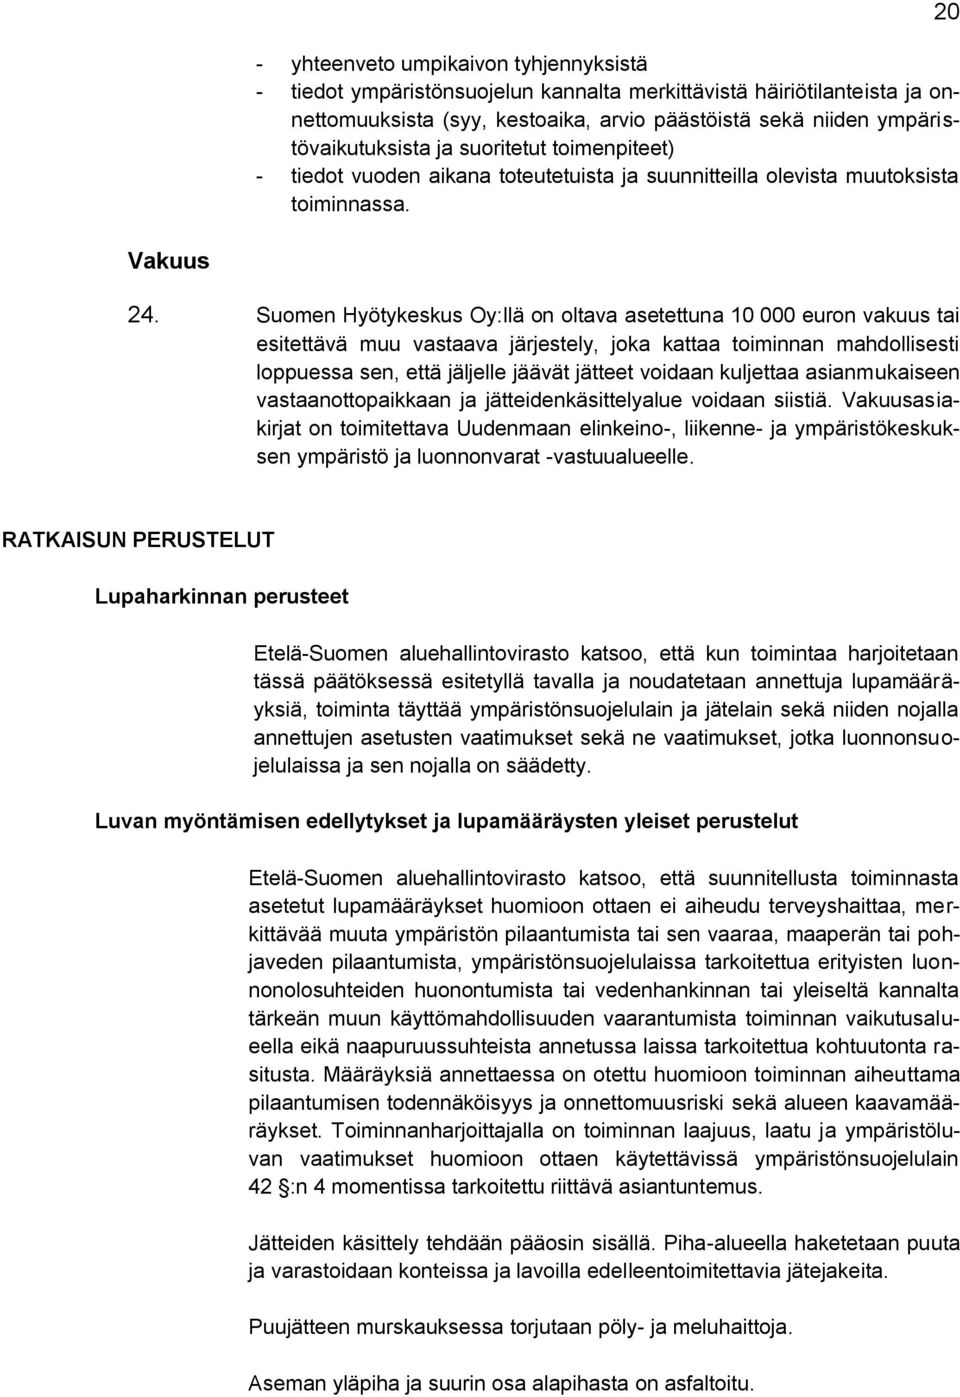 Suomen Hyötykeskus Oy:llä on oltava asetettuna 10 000 euron vakuus tai esitettävä muu vastaava järjestely, joka kattaa toiminnan mahdollisesti loppuessa sen, että jäljelle jäävät jätteet voidaan